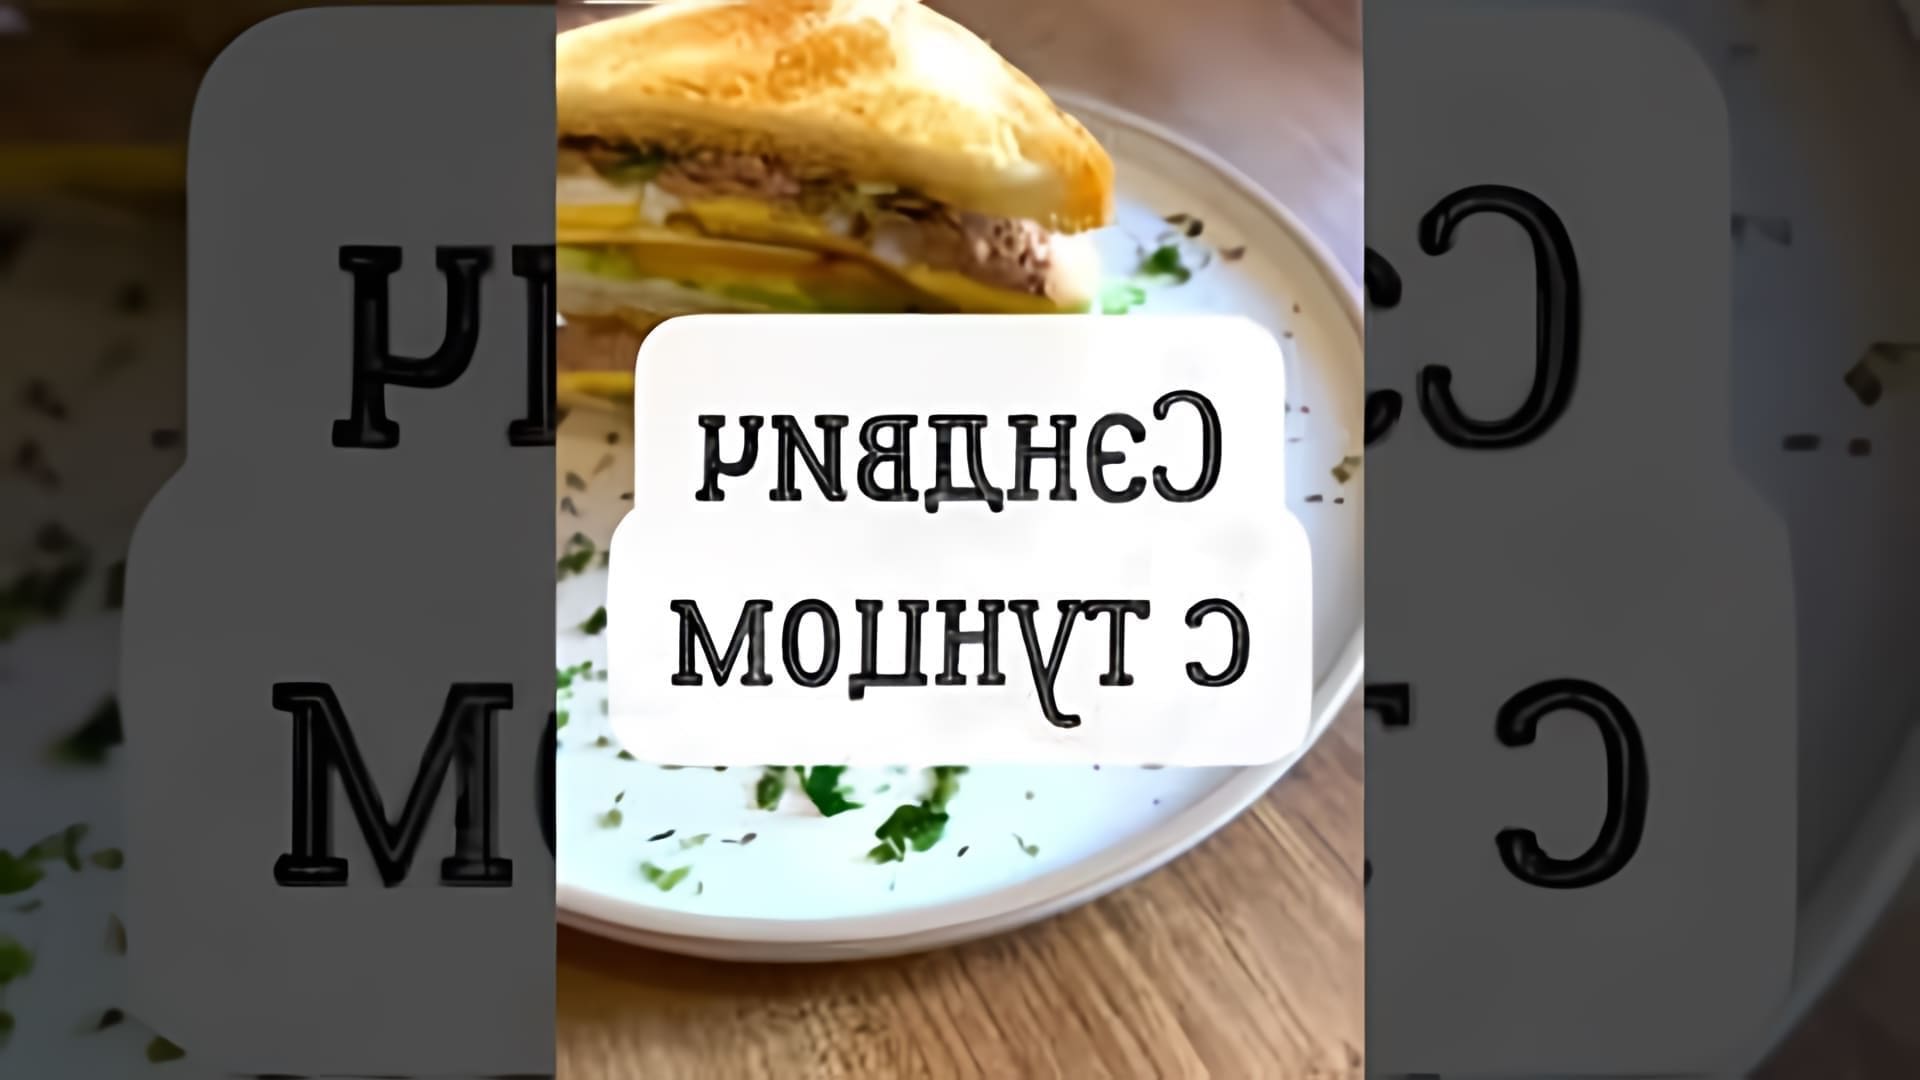 В этом видео демонстрируется пошаговый рецепт приготовления вкуснейшего сэндвича с тунцом